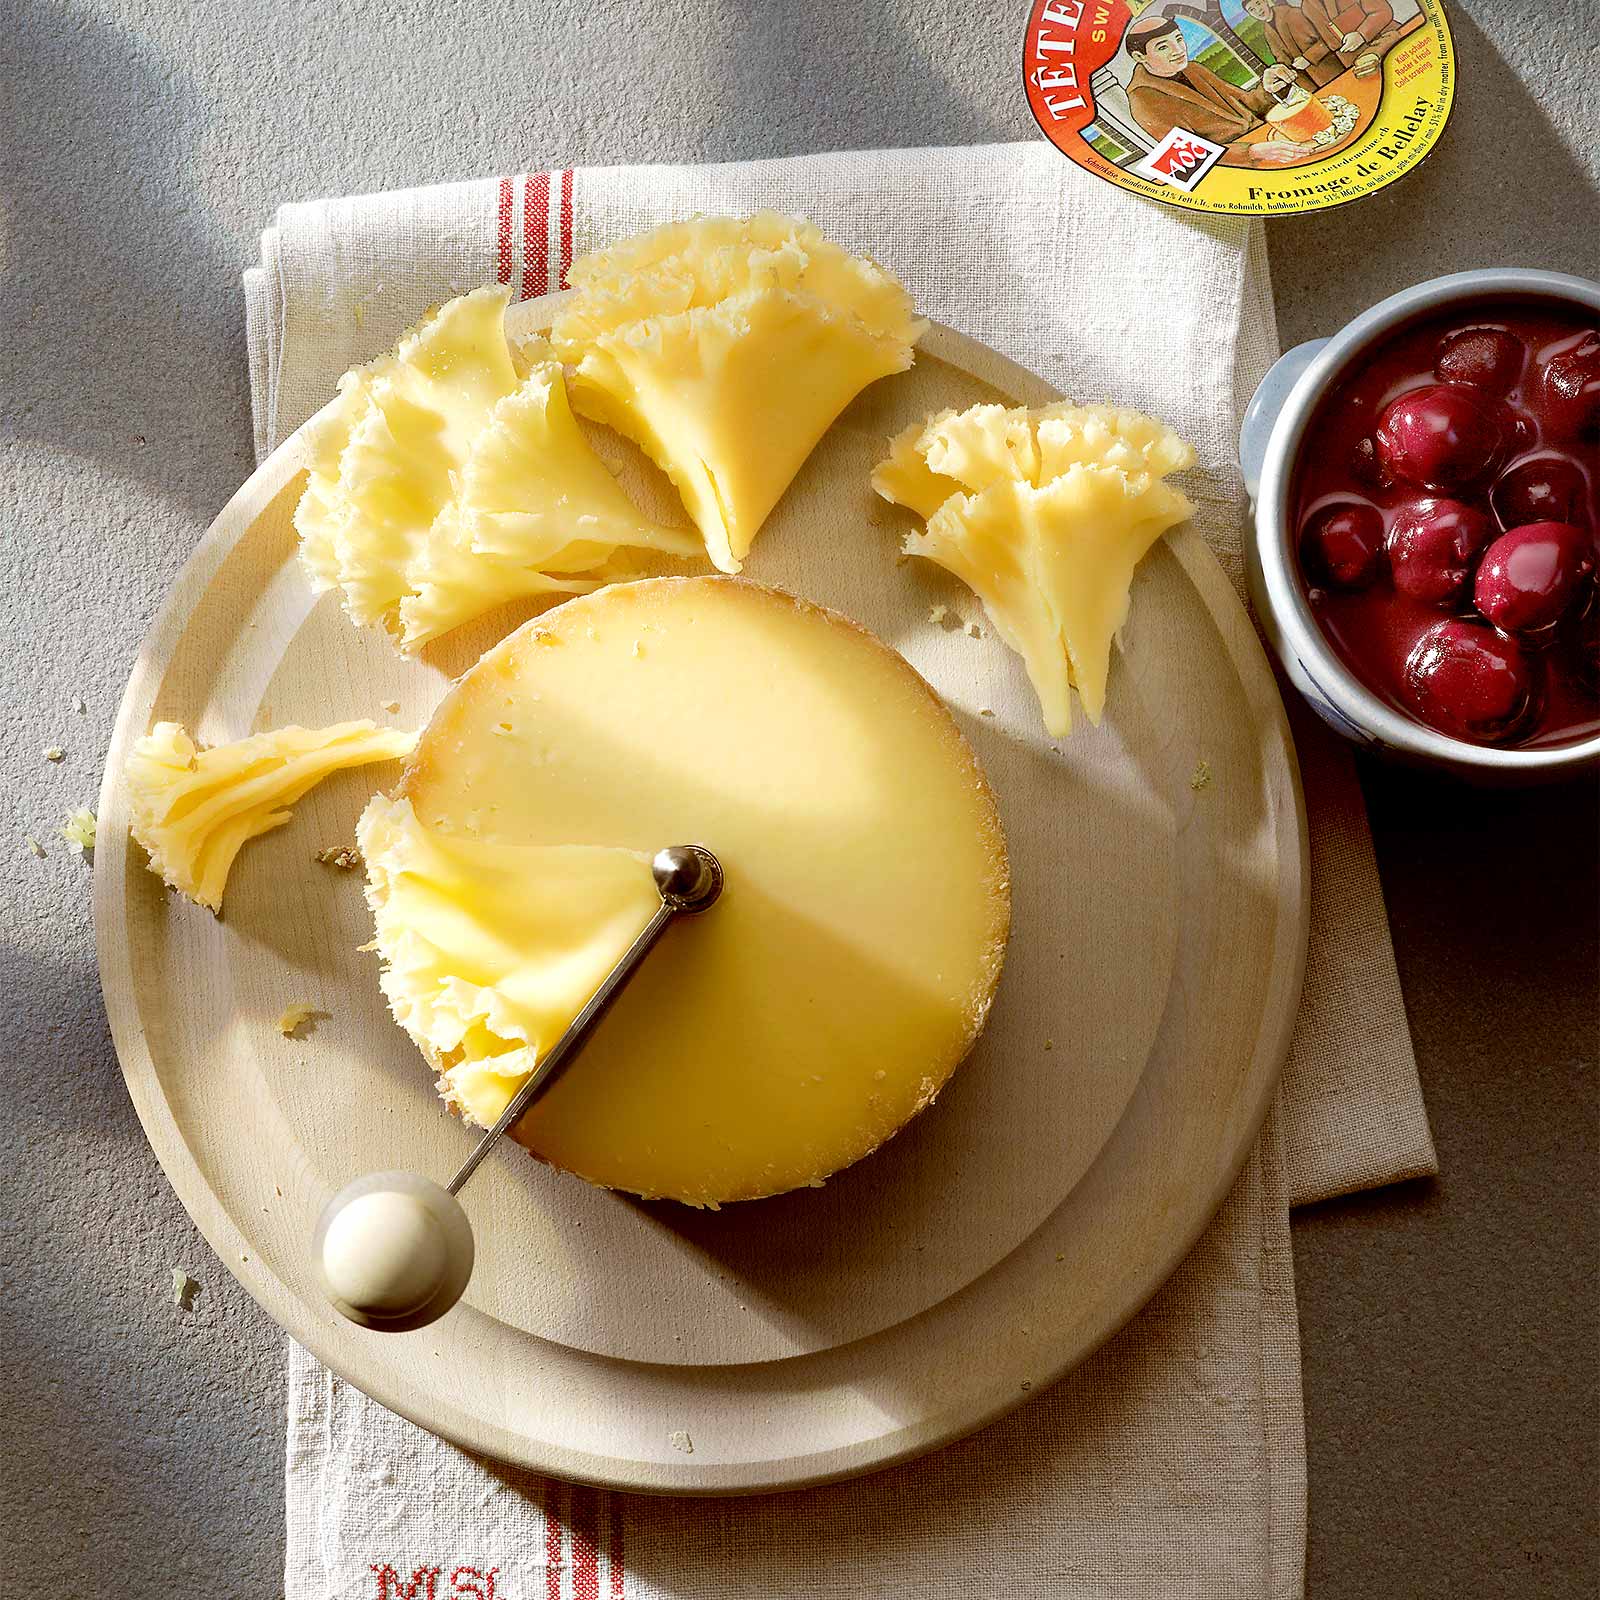 Tête de moine : tout savoir sur ce fromage